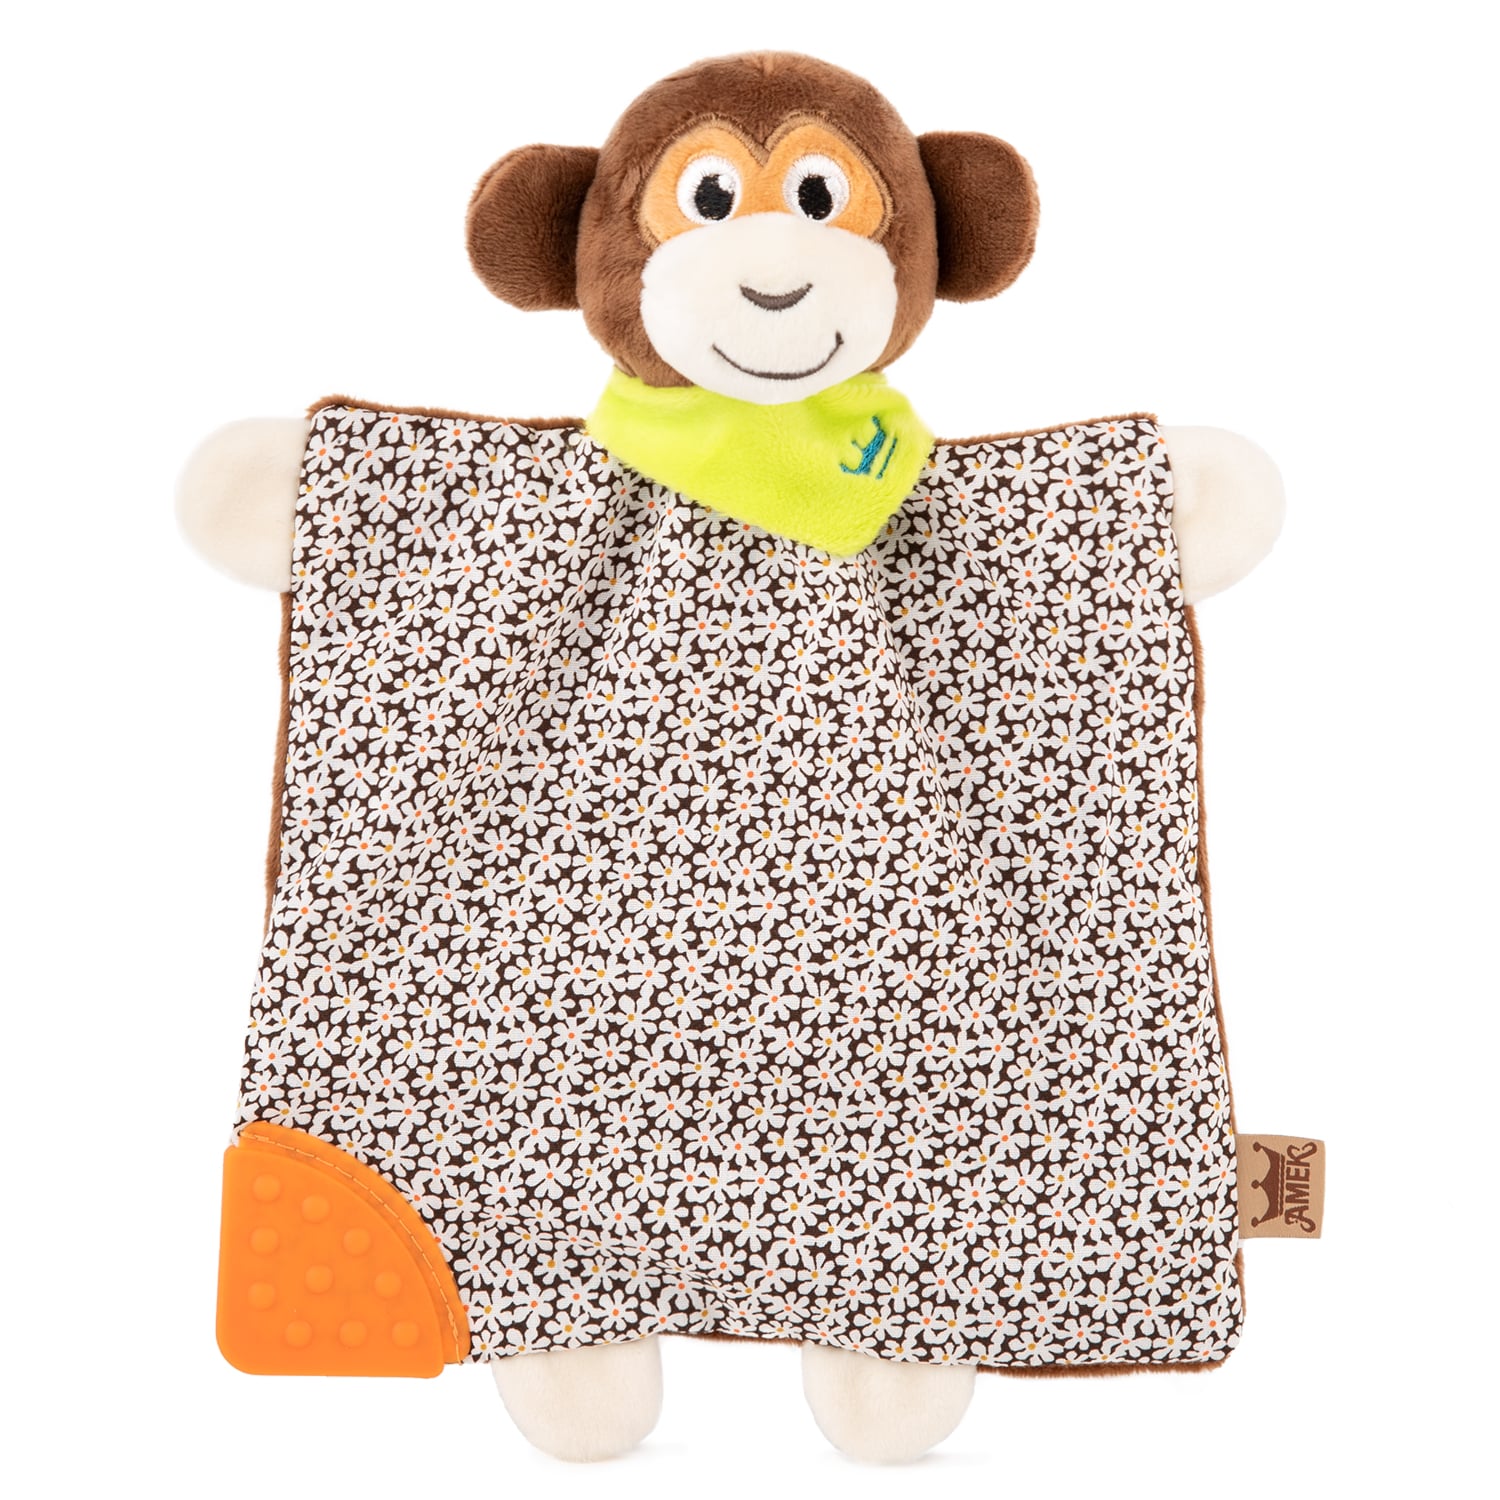 Soft toy for cuddling - Monkey